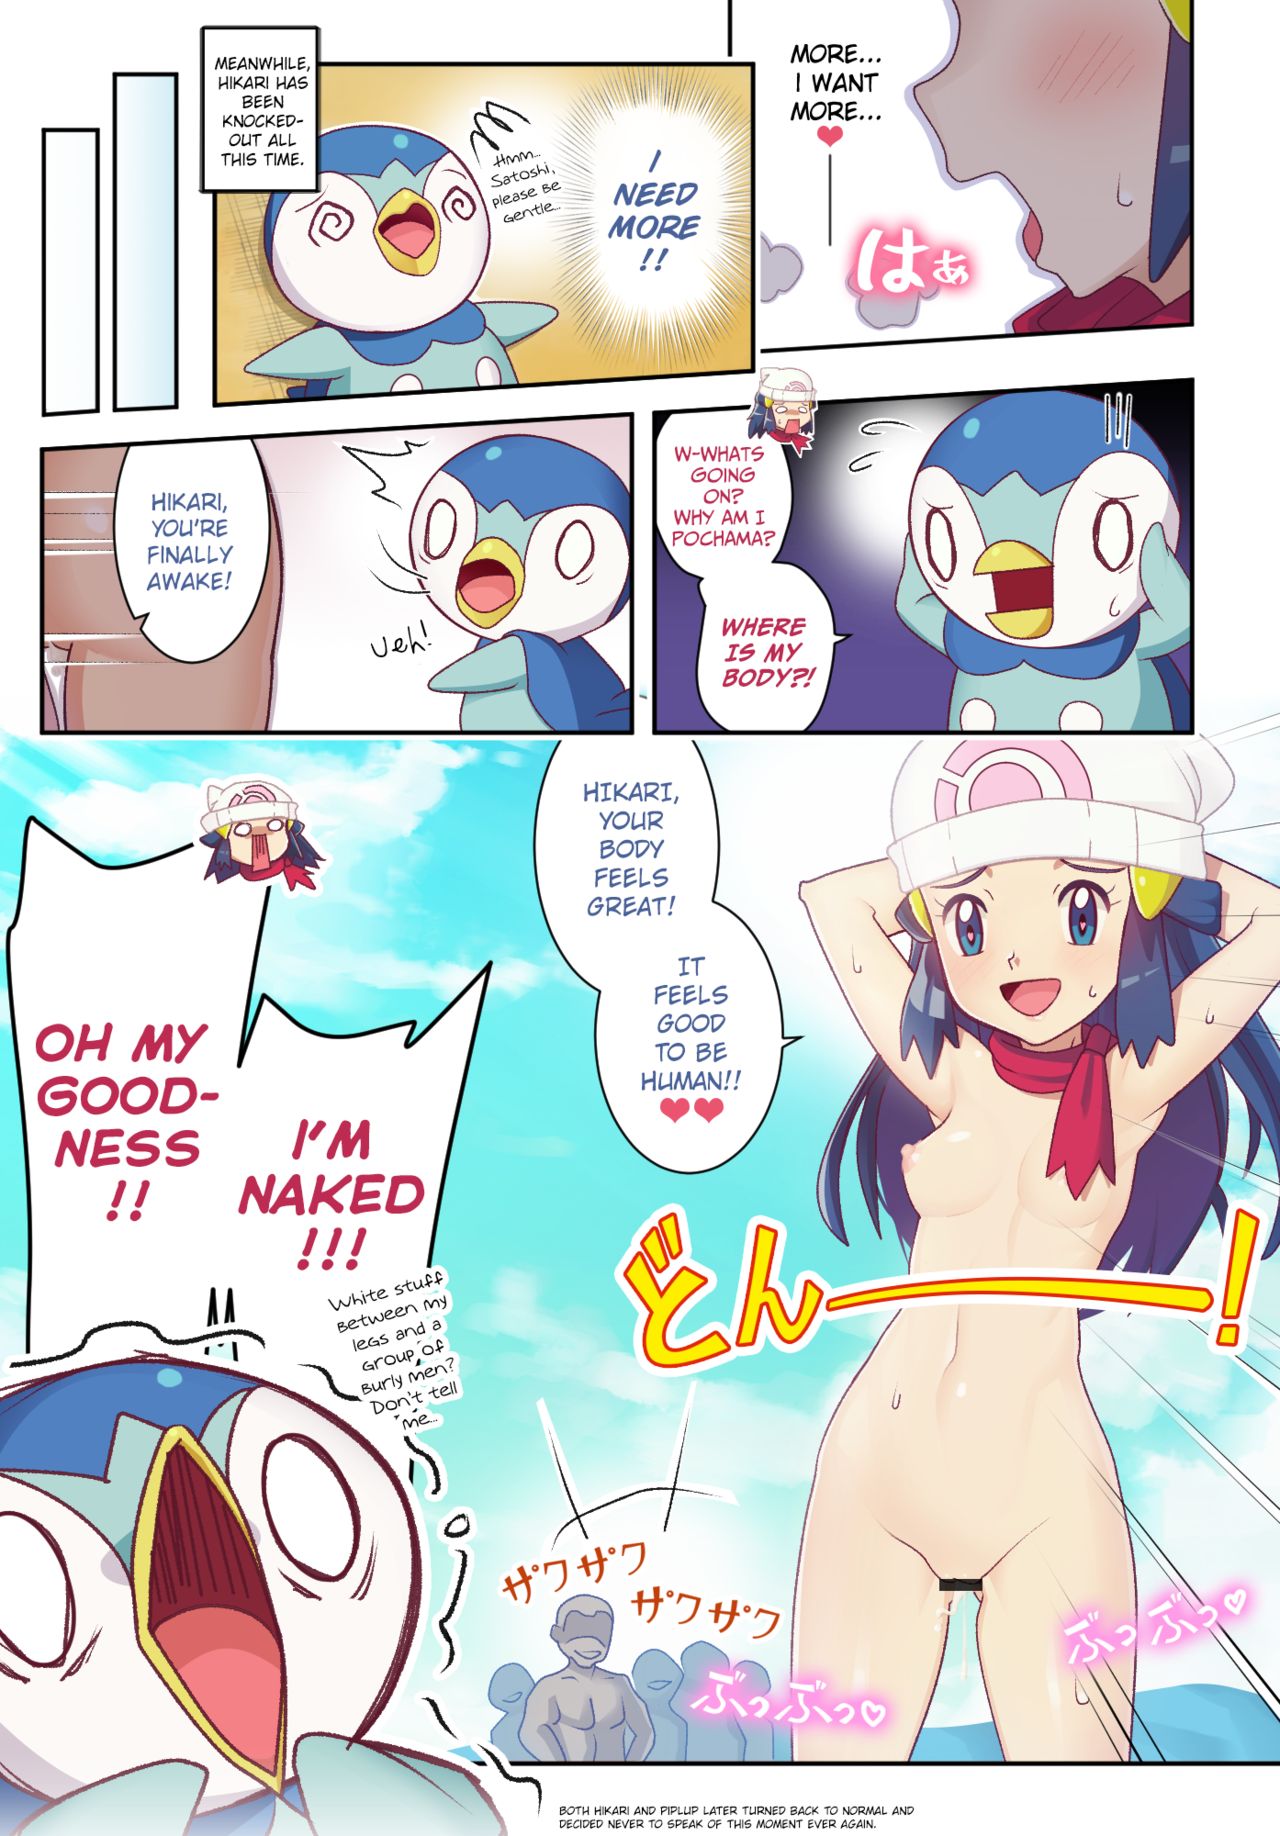 Gazing Eye Hikari-Pochama: Body Swap Comic (Pokemon) .